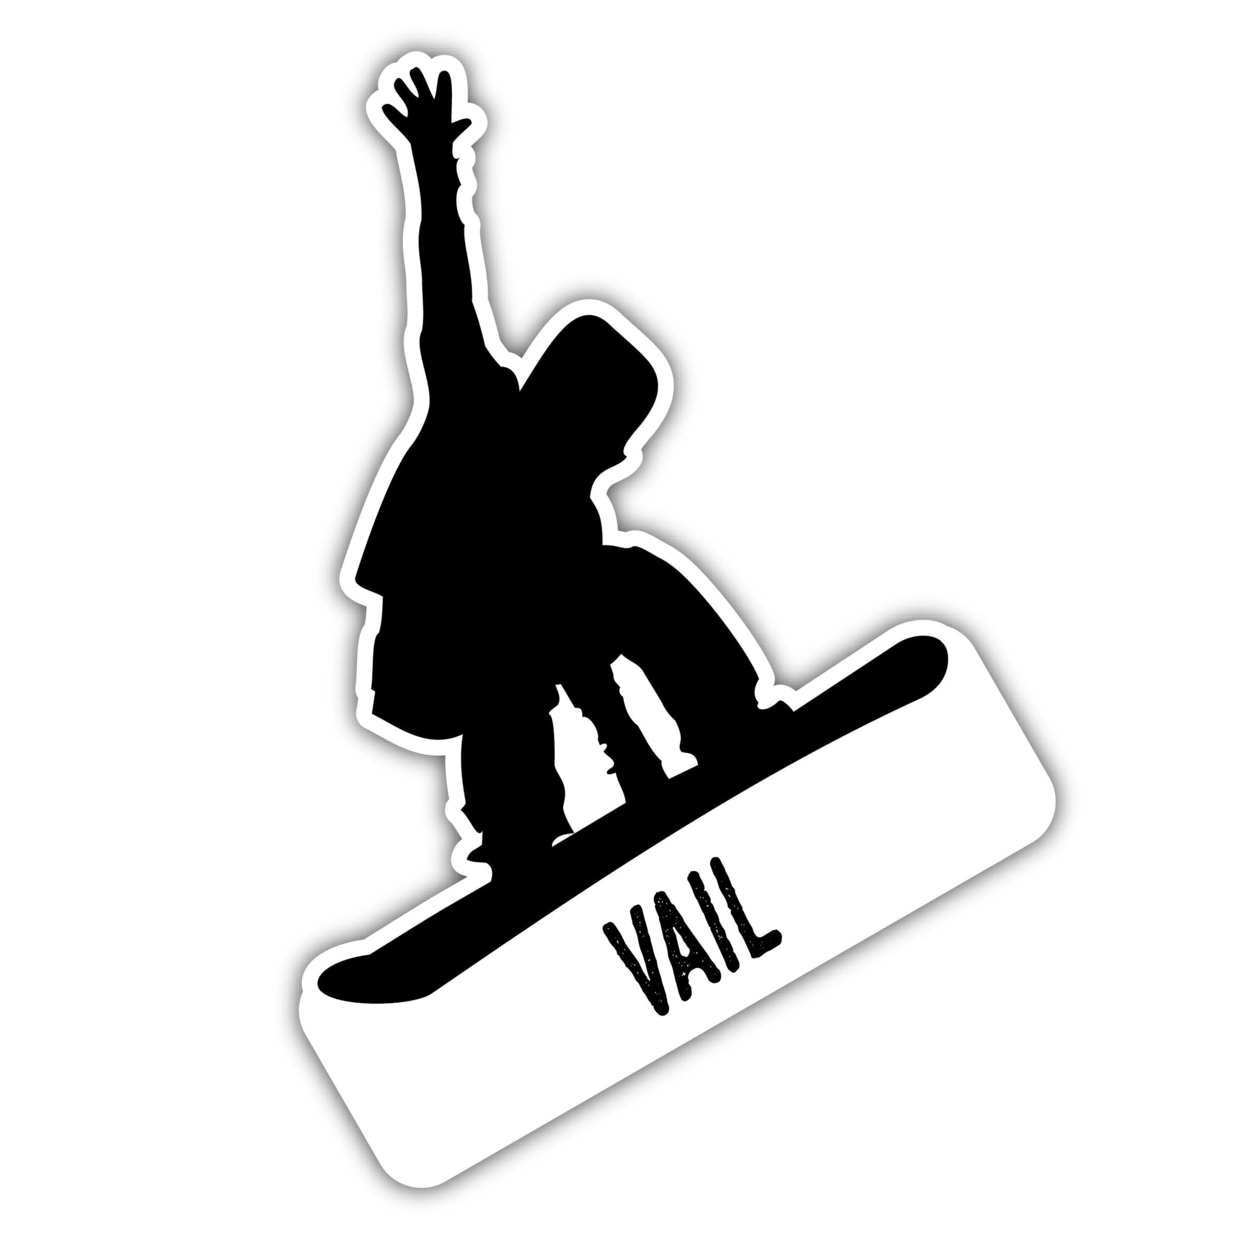 Vail Colorado Ski Adventures Souvenir 4 Inch Vinyl Decal Sticker Mountain Design